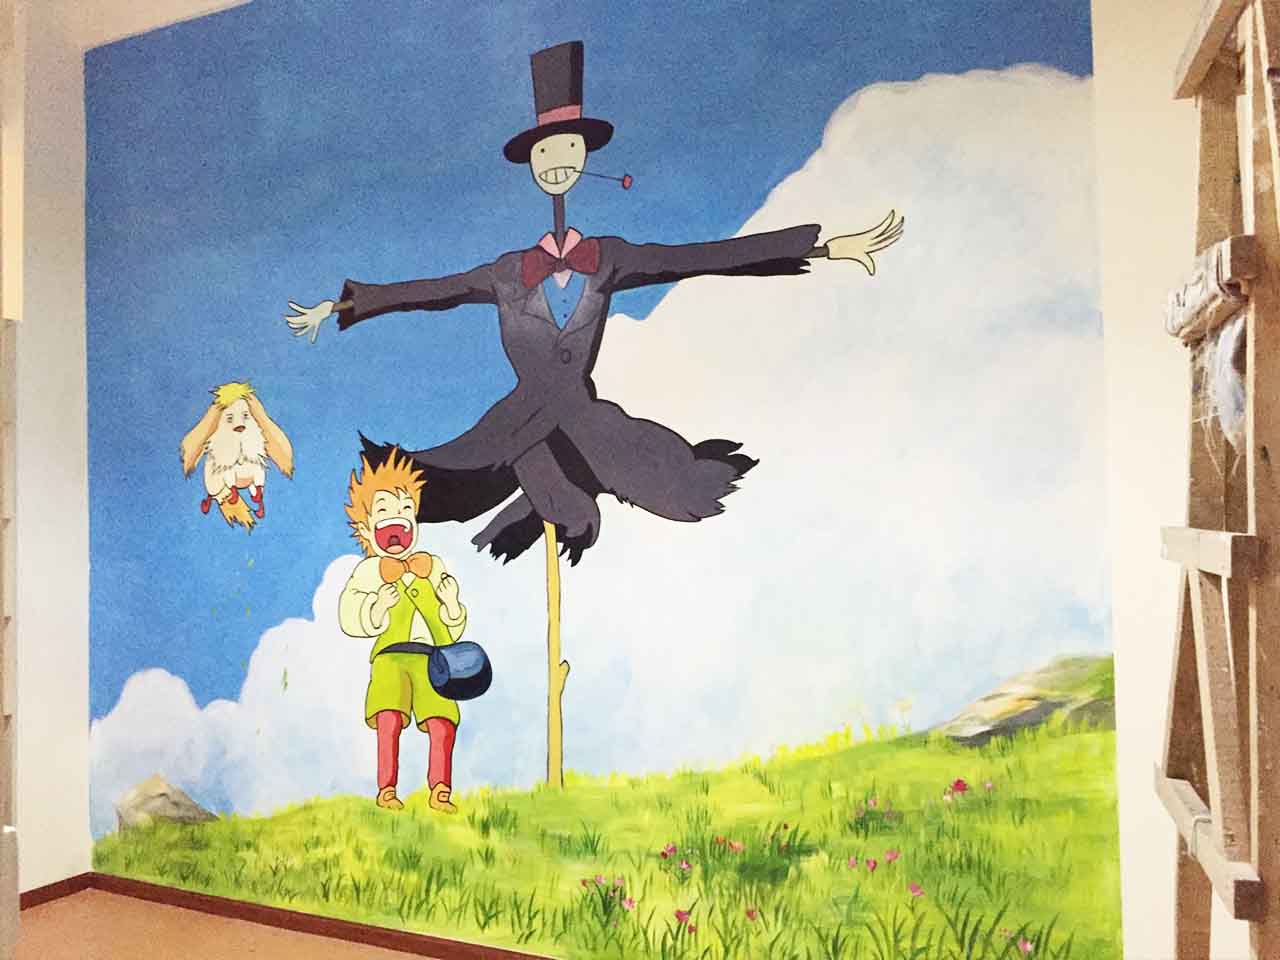 幼儿校园动物园游乐场卡通宫崎骏墙绘壁画彩绘涂鸦手绘成都澜泉文化